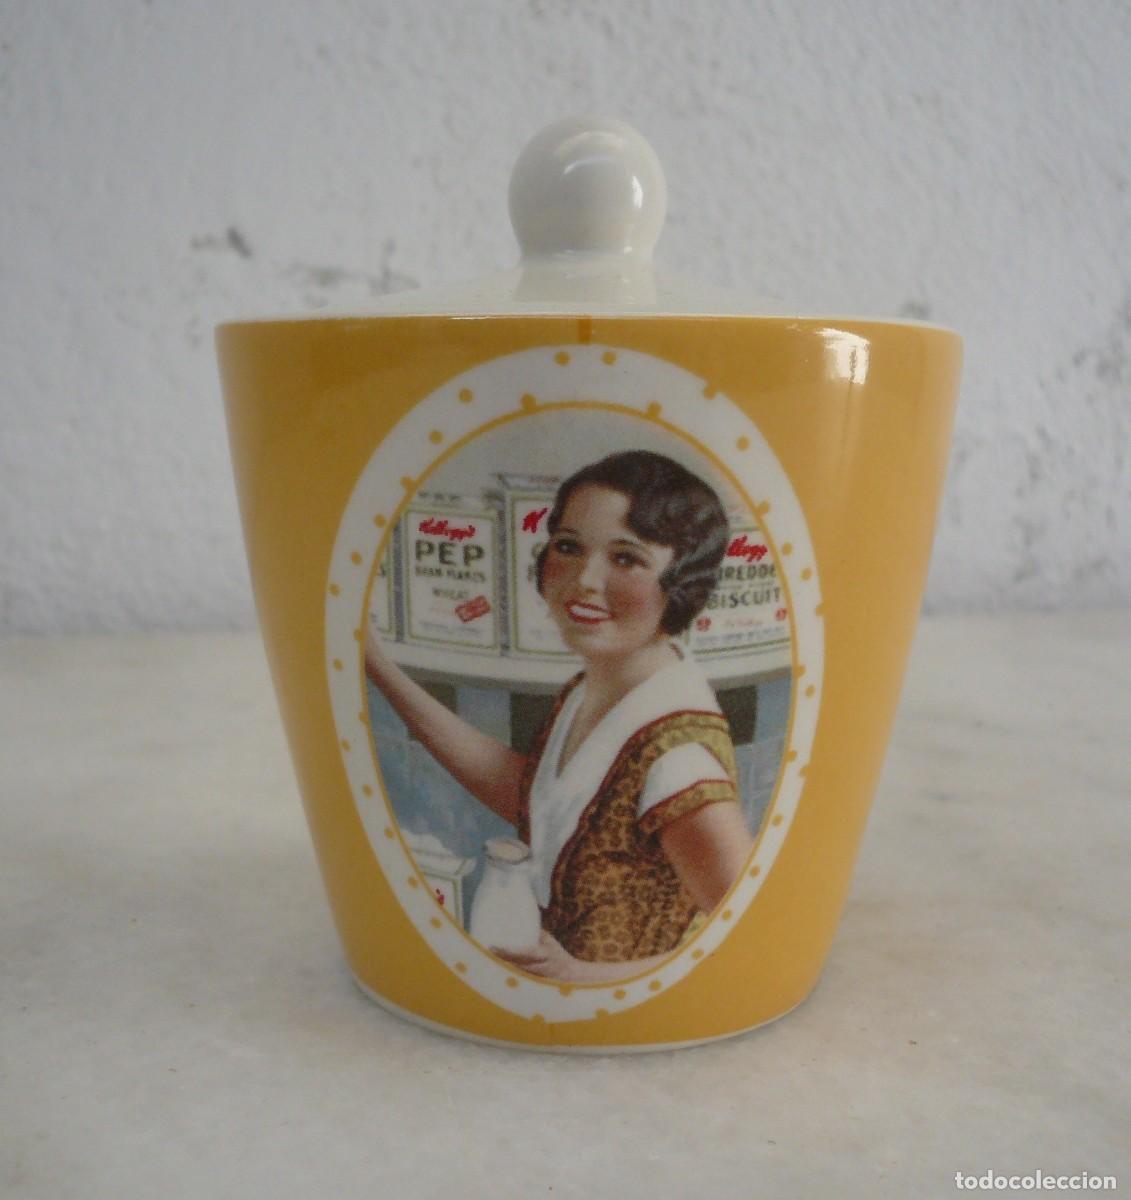 azucarero vintage - Compra venta en todocoleccion